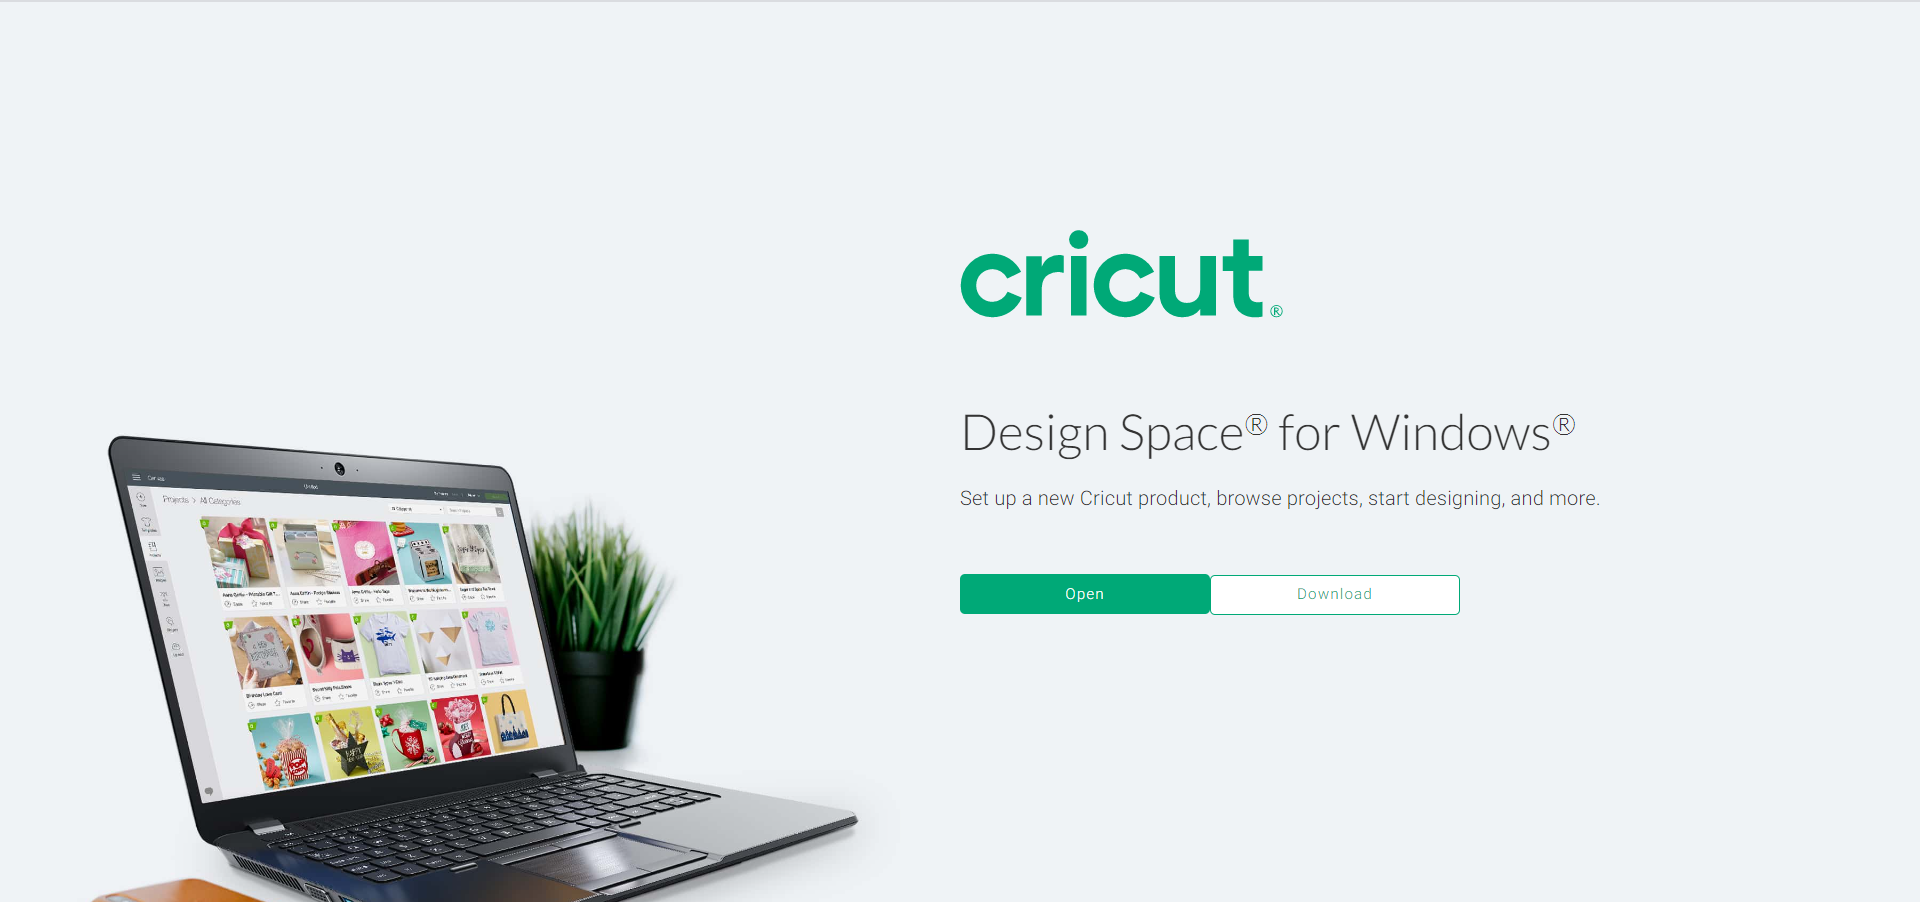 Cricut.com setup windows